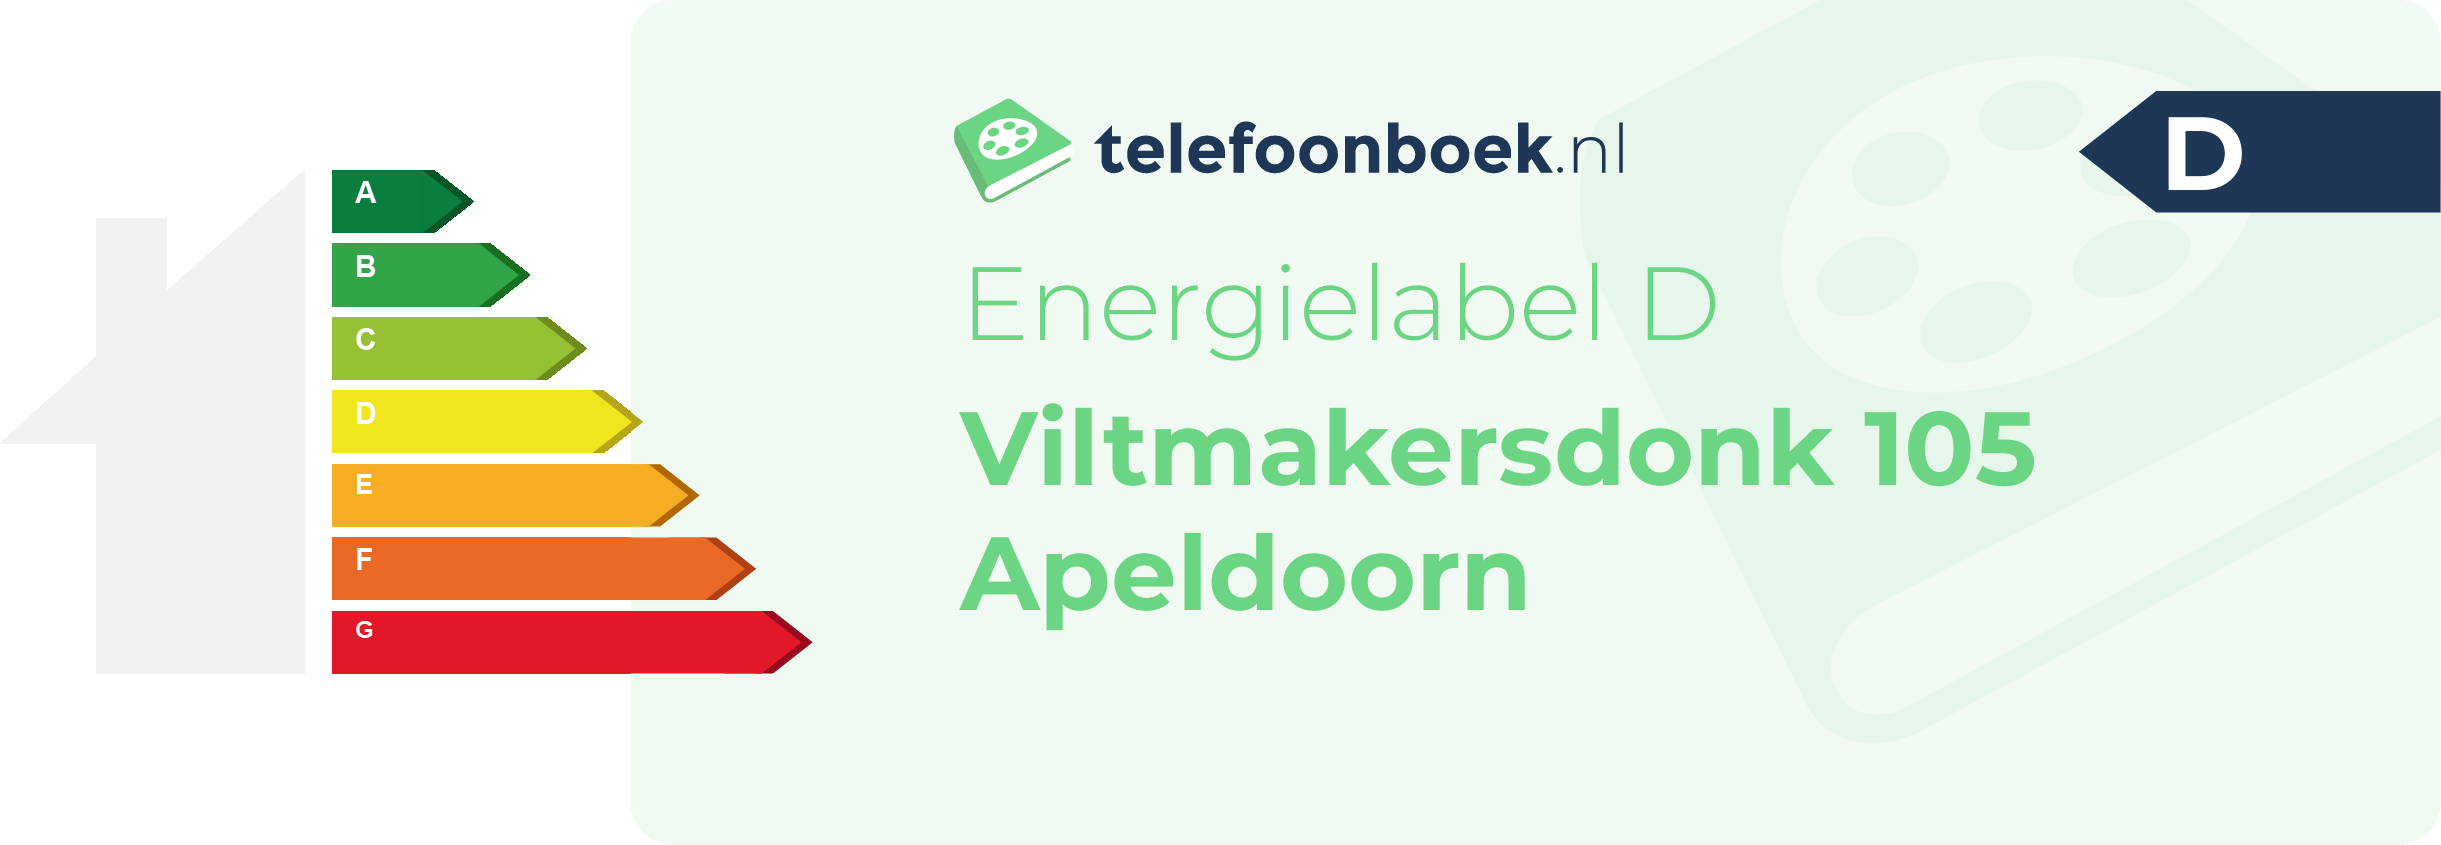 Energielabel Viltmakersdonk 105 Apeldoorn